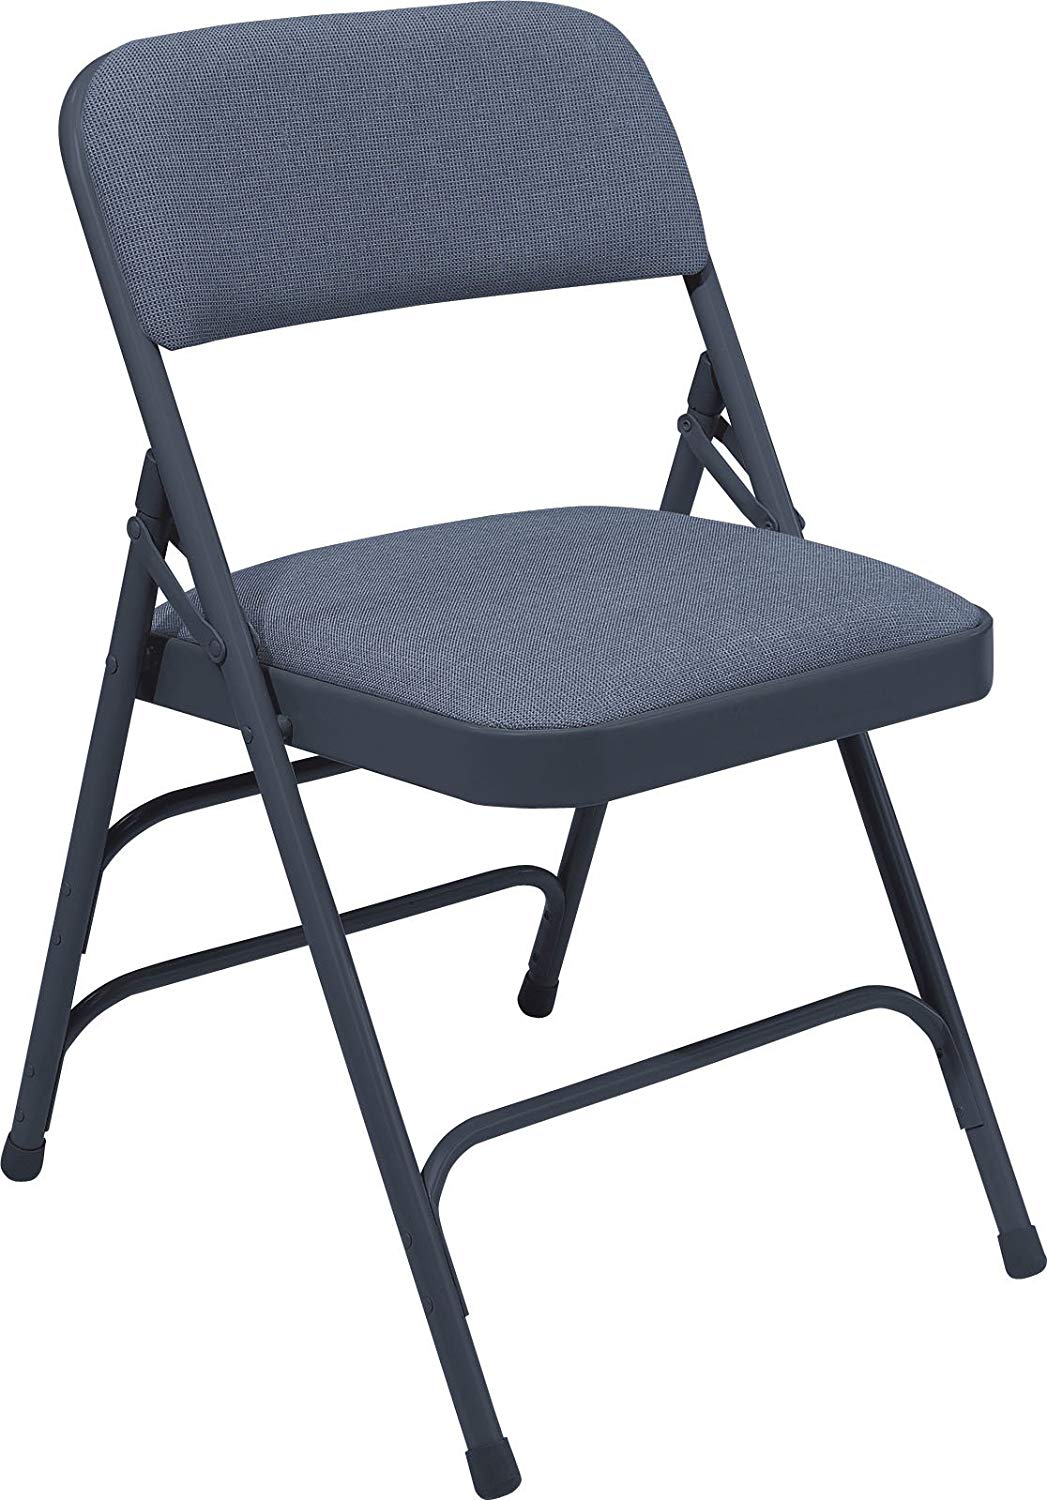 chair clipart folding chair